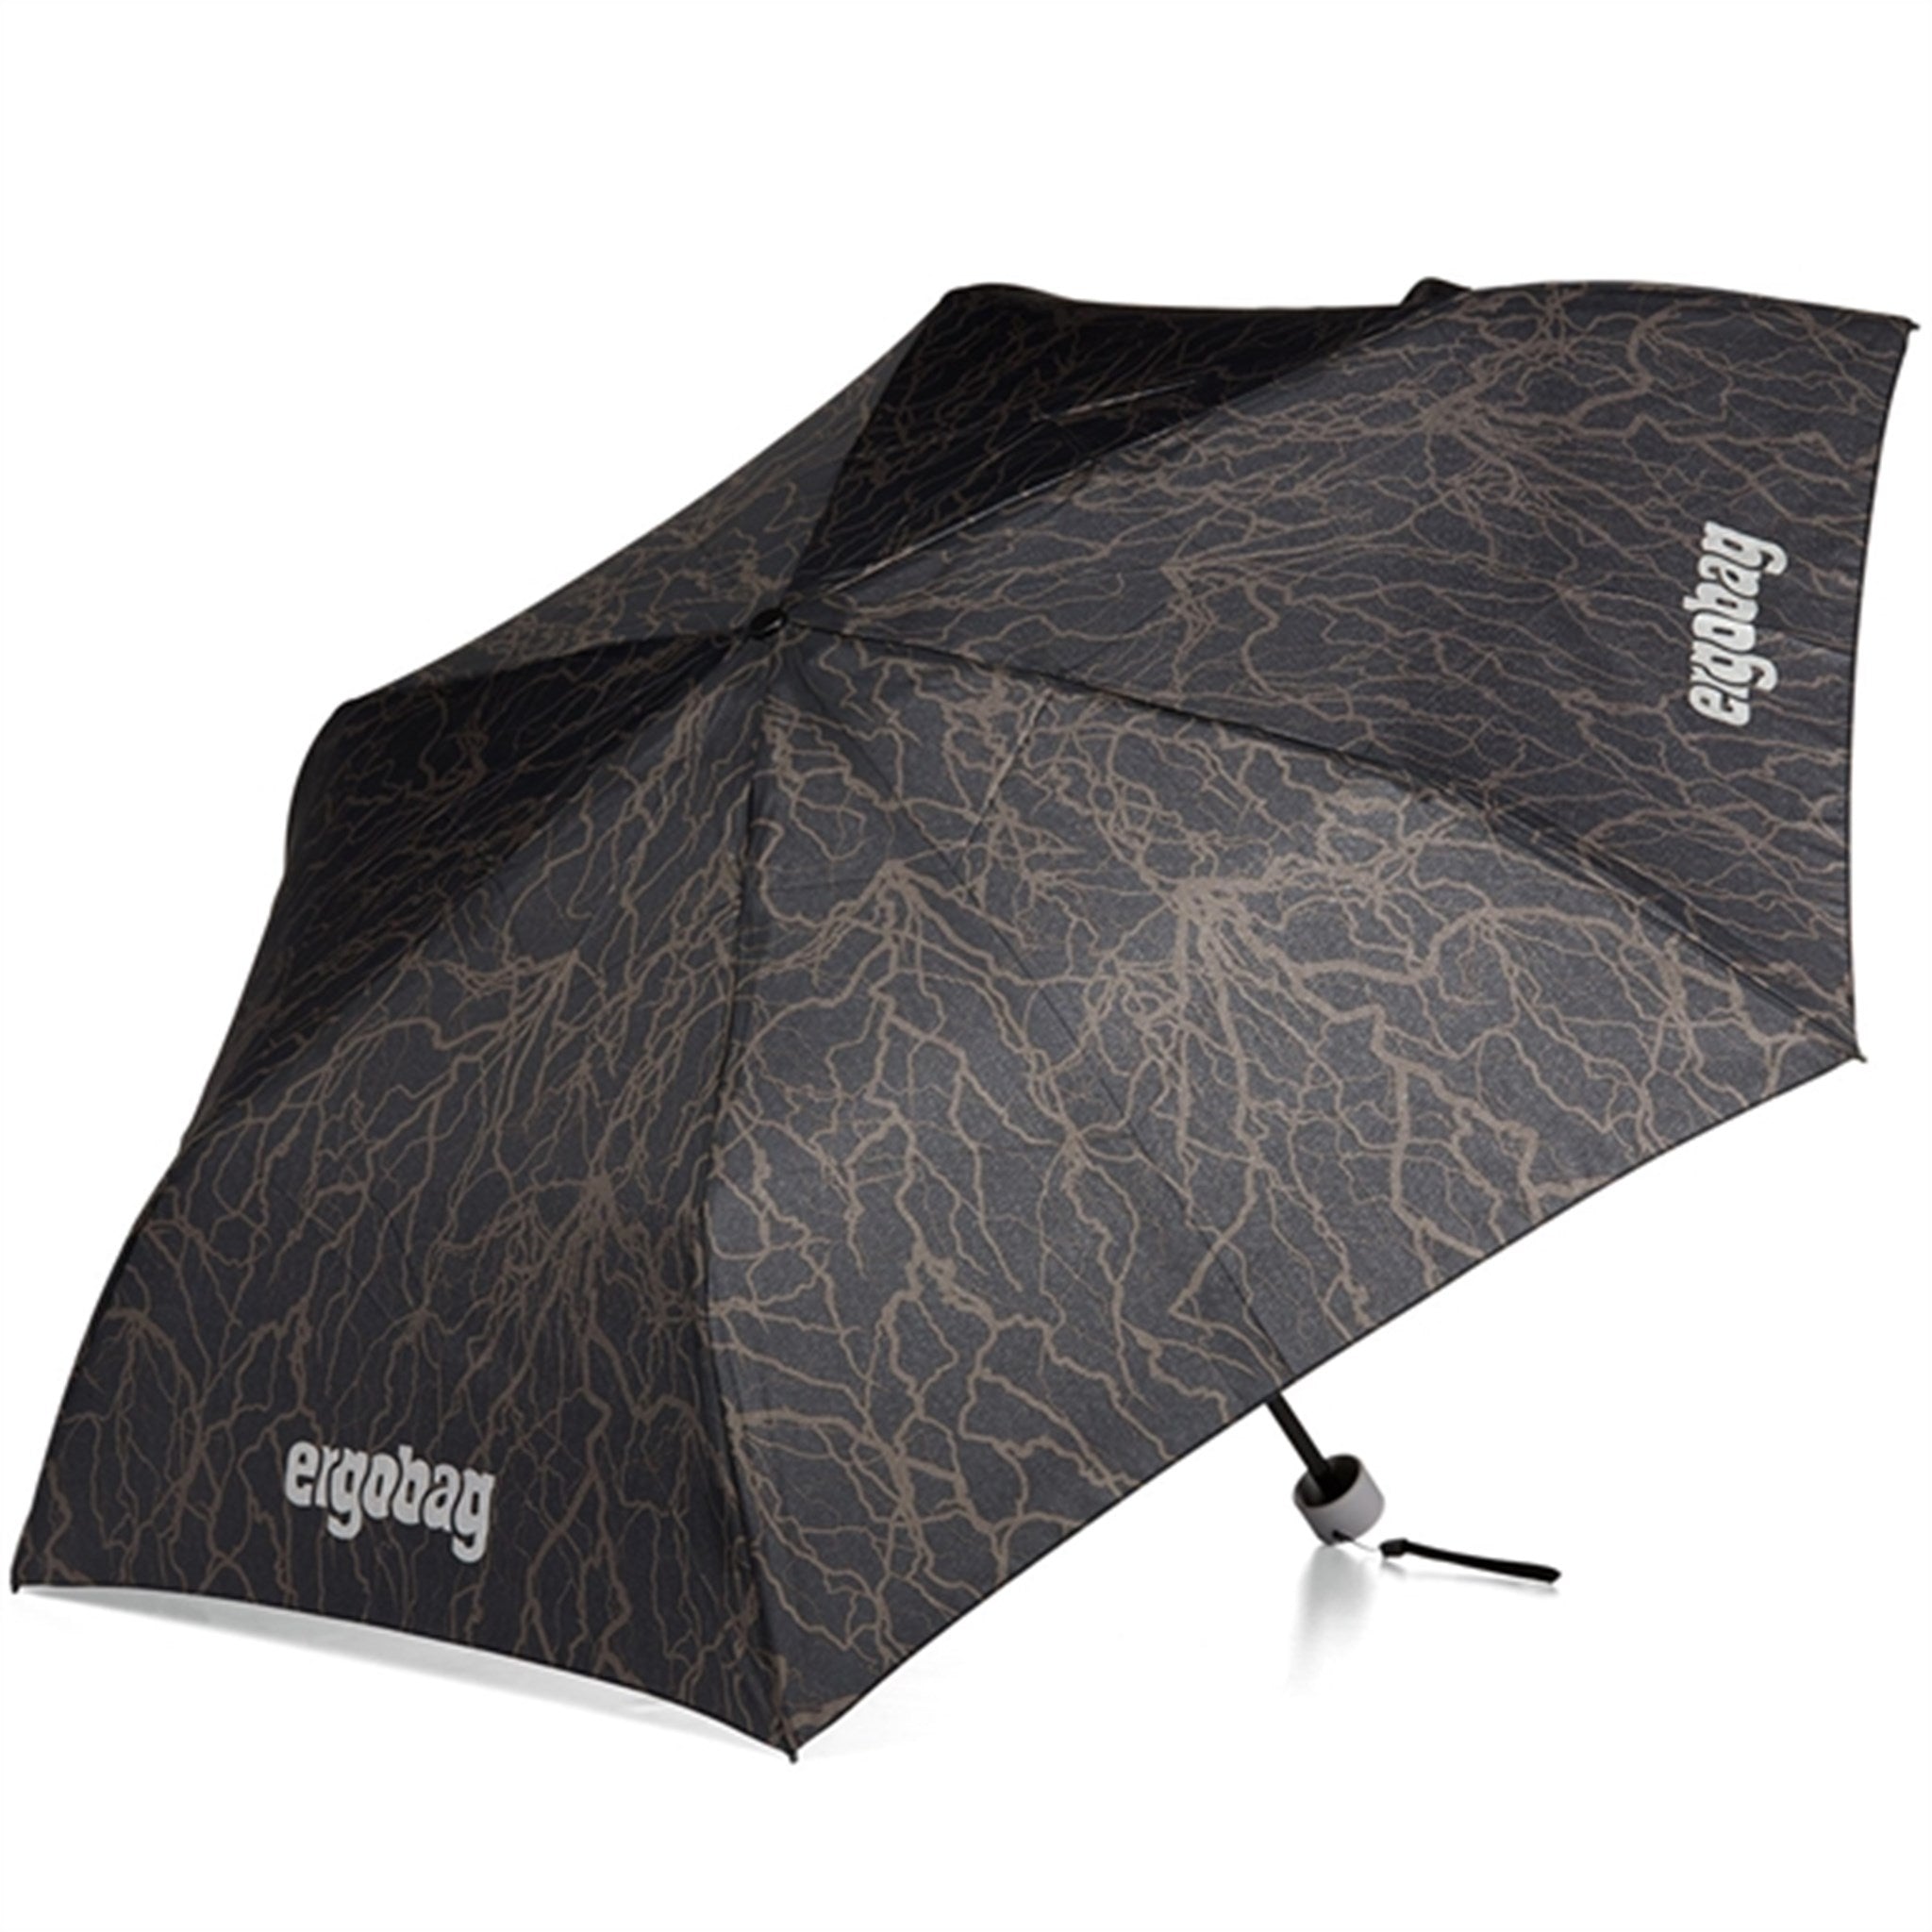 Ergobag Umbrella Super ReflectBear